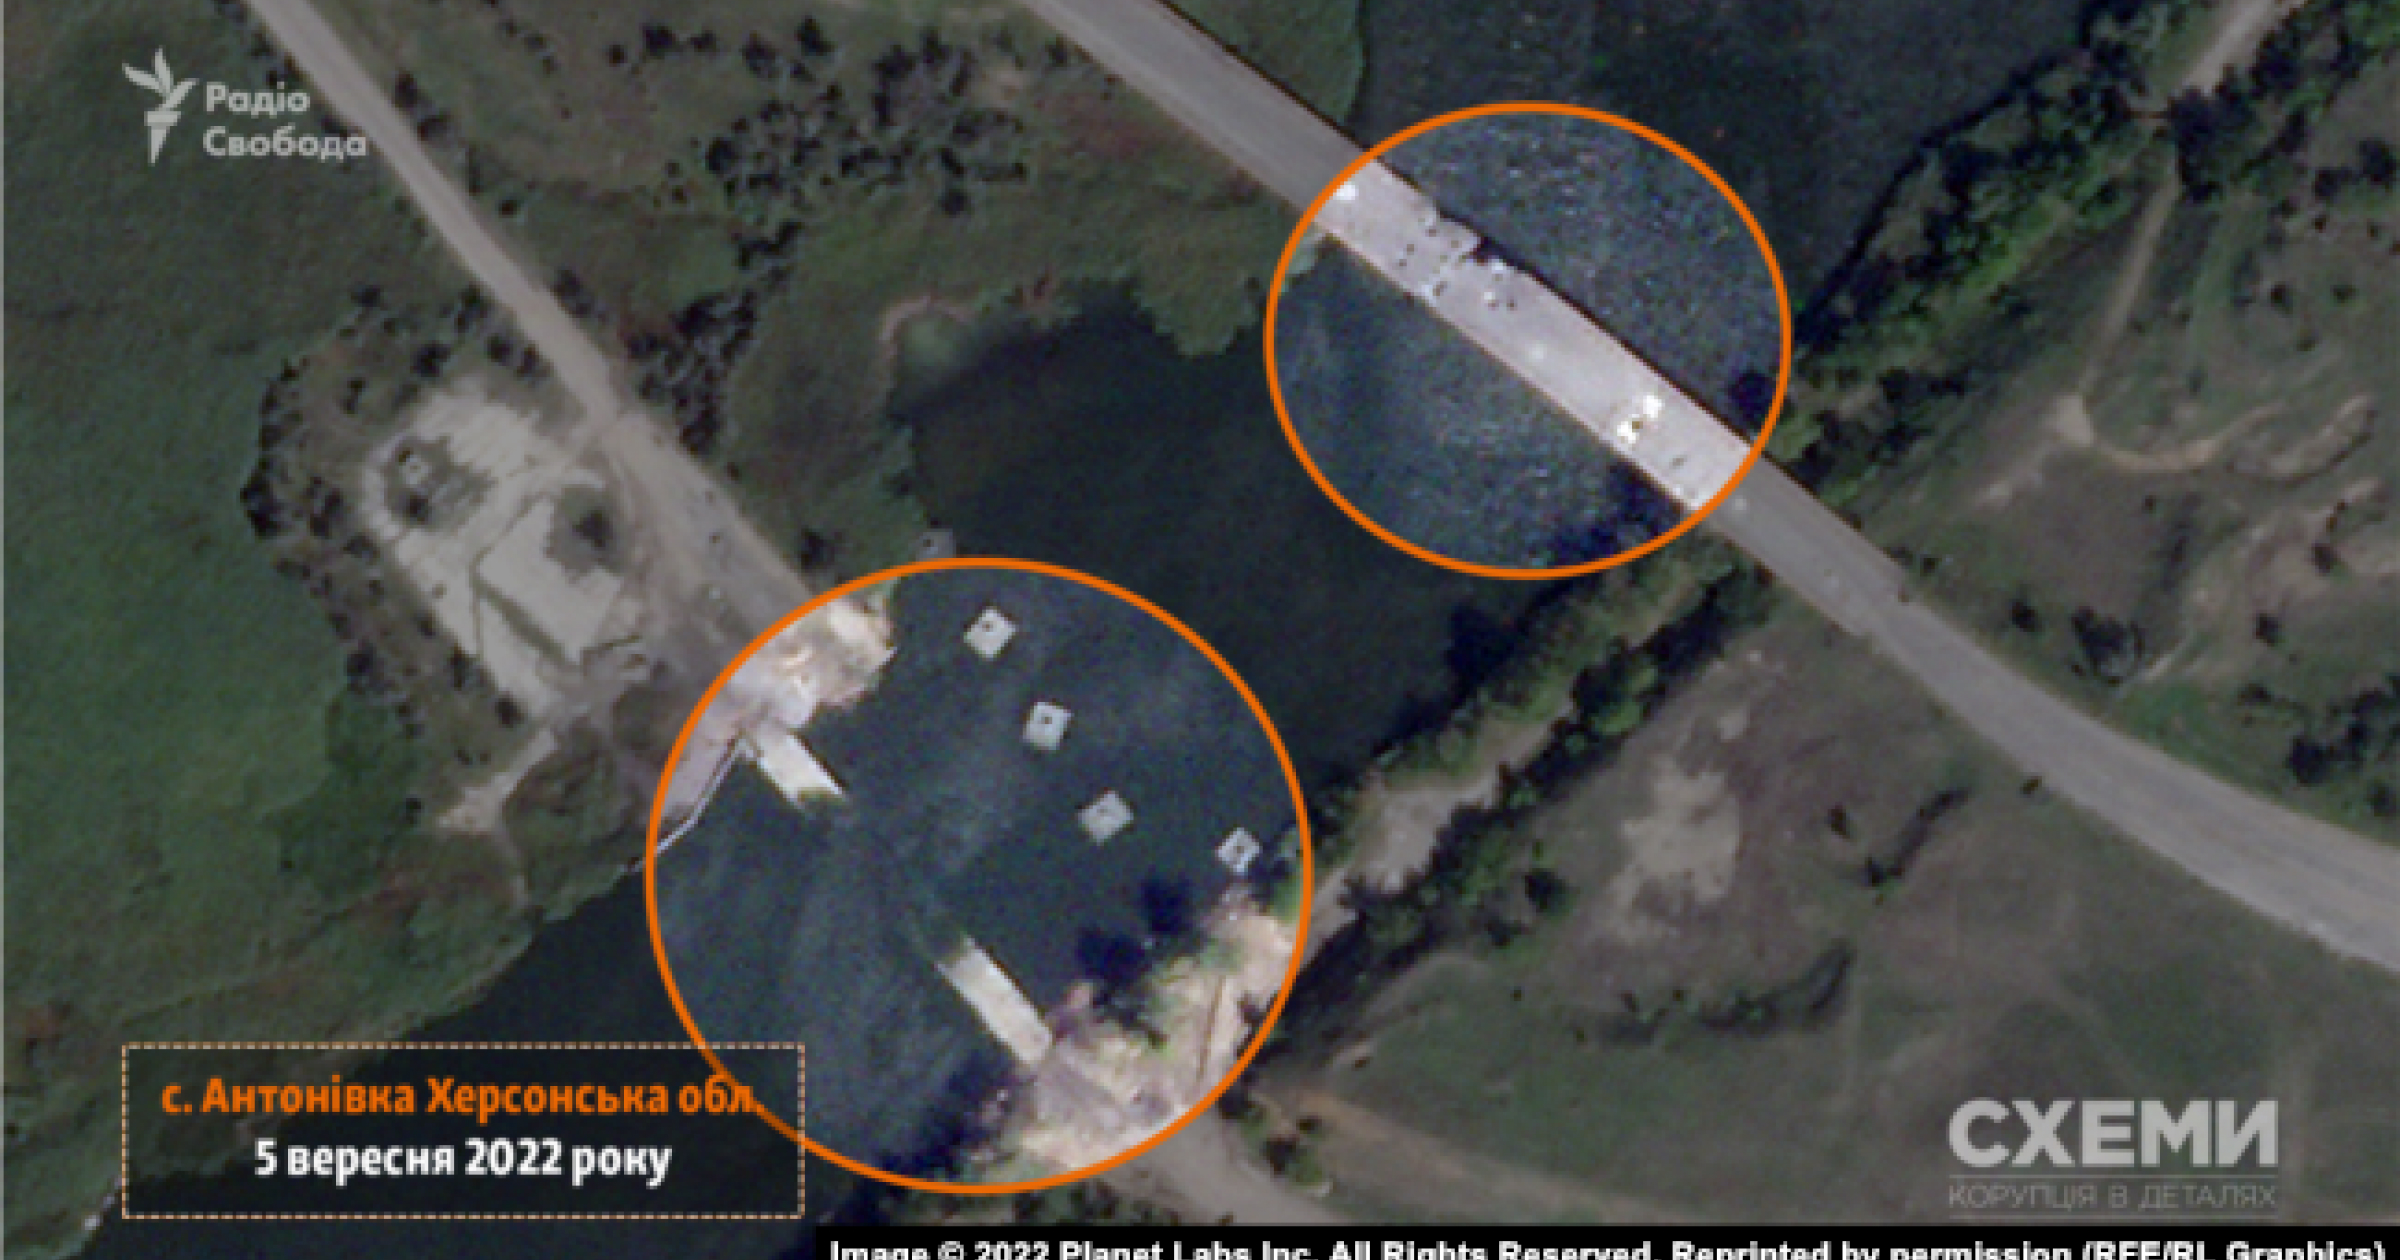 «Схеми» опублікували супутникові знімки понтонного мосту поблизу Дар’ївки на Херсонщині, який знищили ЗСУ